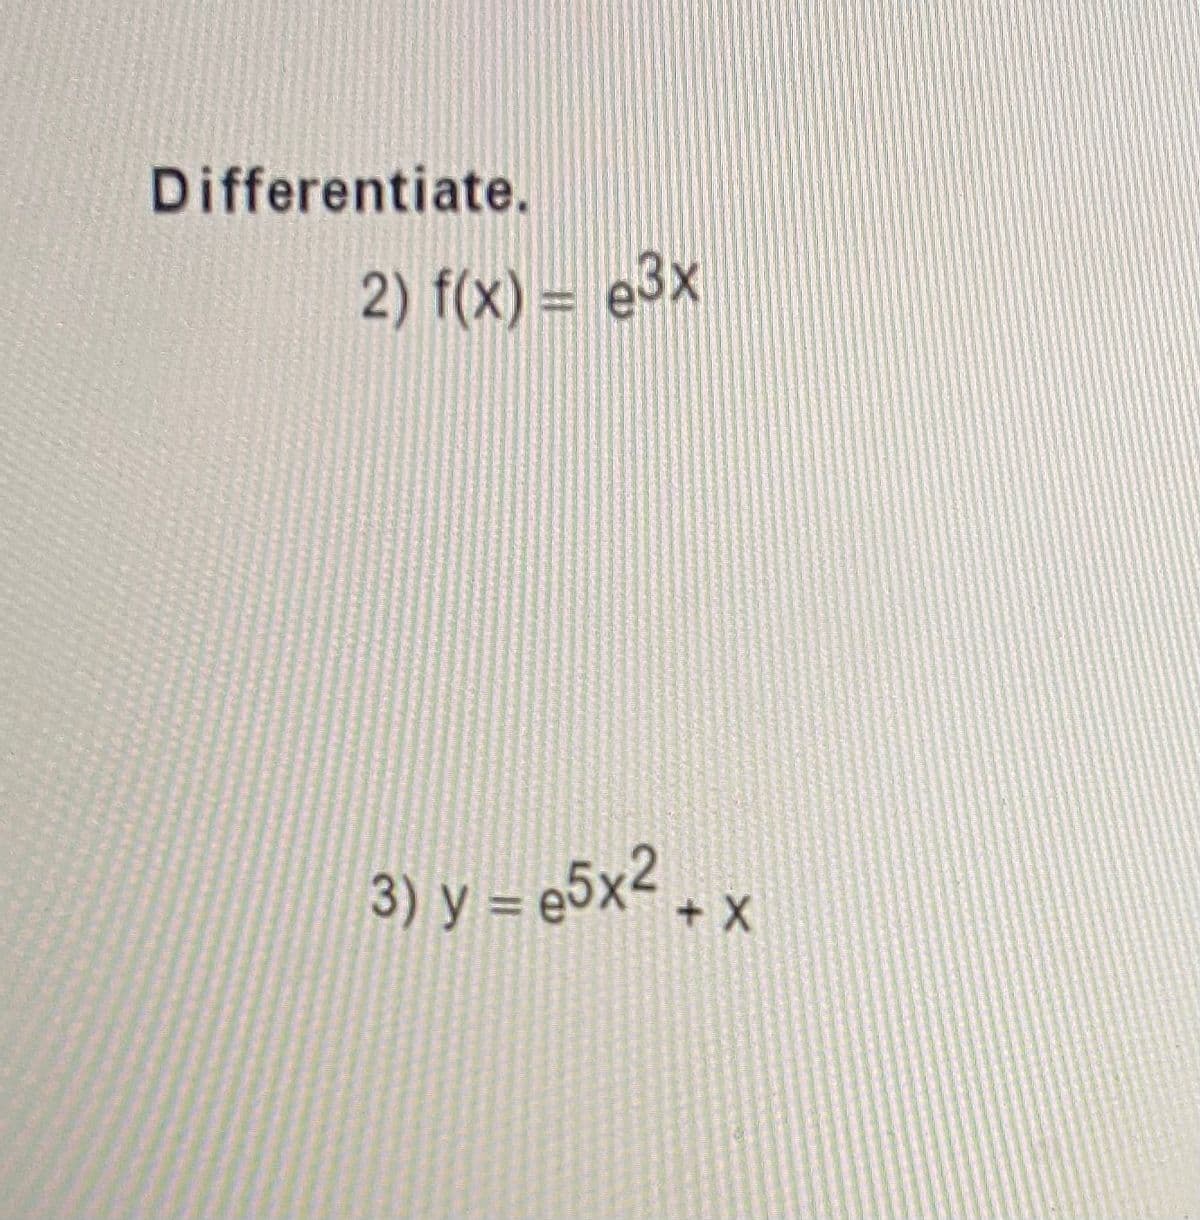 Differentiate.
2) f(x) = e3x
3) y = e5x2
+ X+
